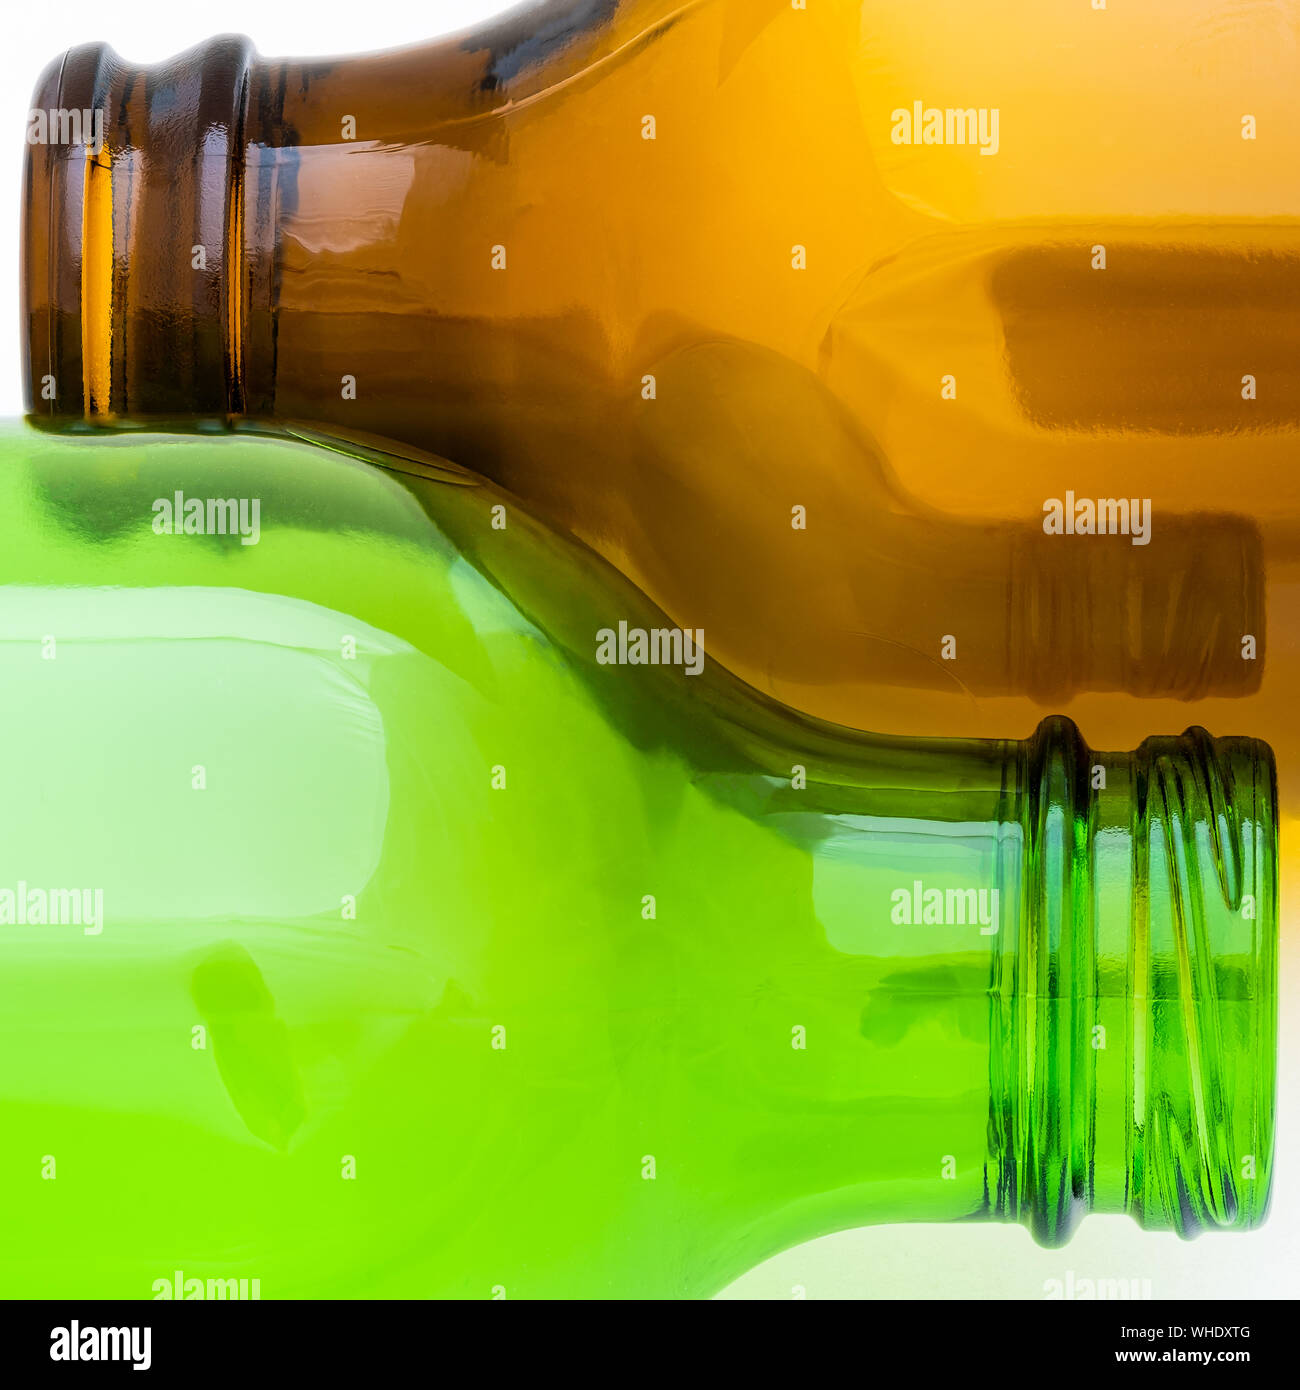 Abstrakte schöne Kurven eines leeren braunen und grünen Bier Flasche liegen nebeneinander auf einem weißen Hintergrund Stockfoto